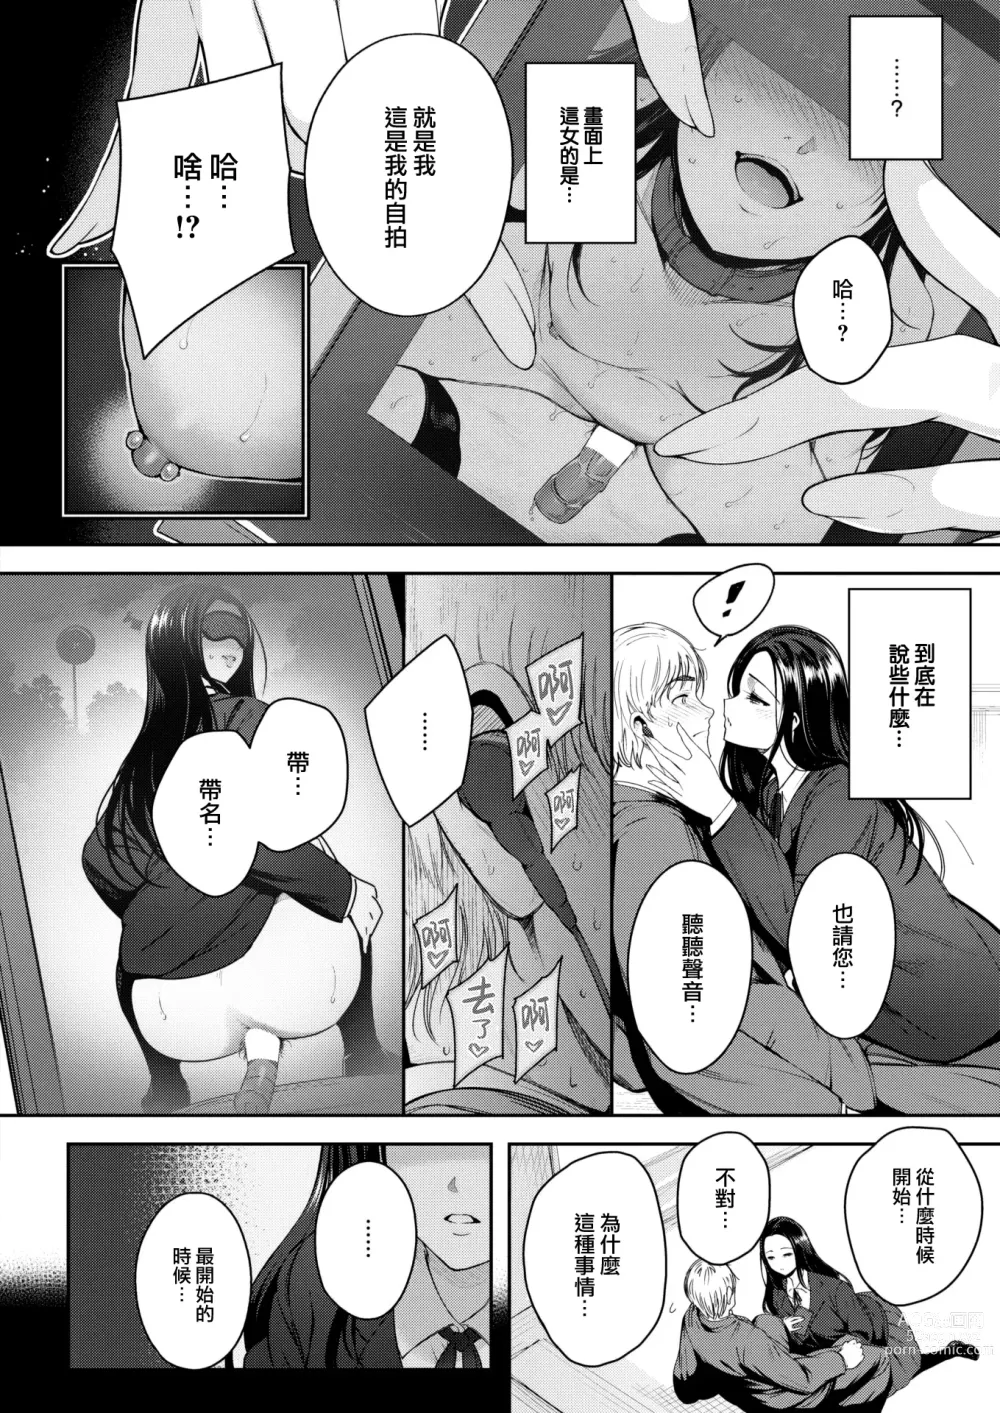 Page 7 of manga Kankou